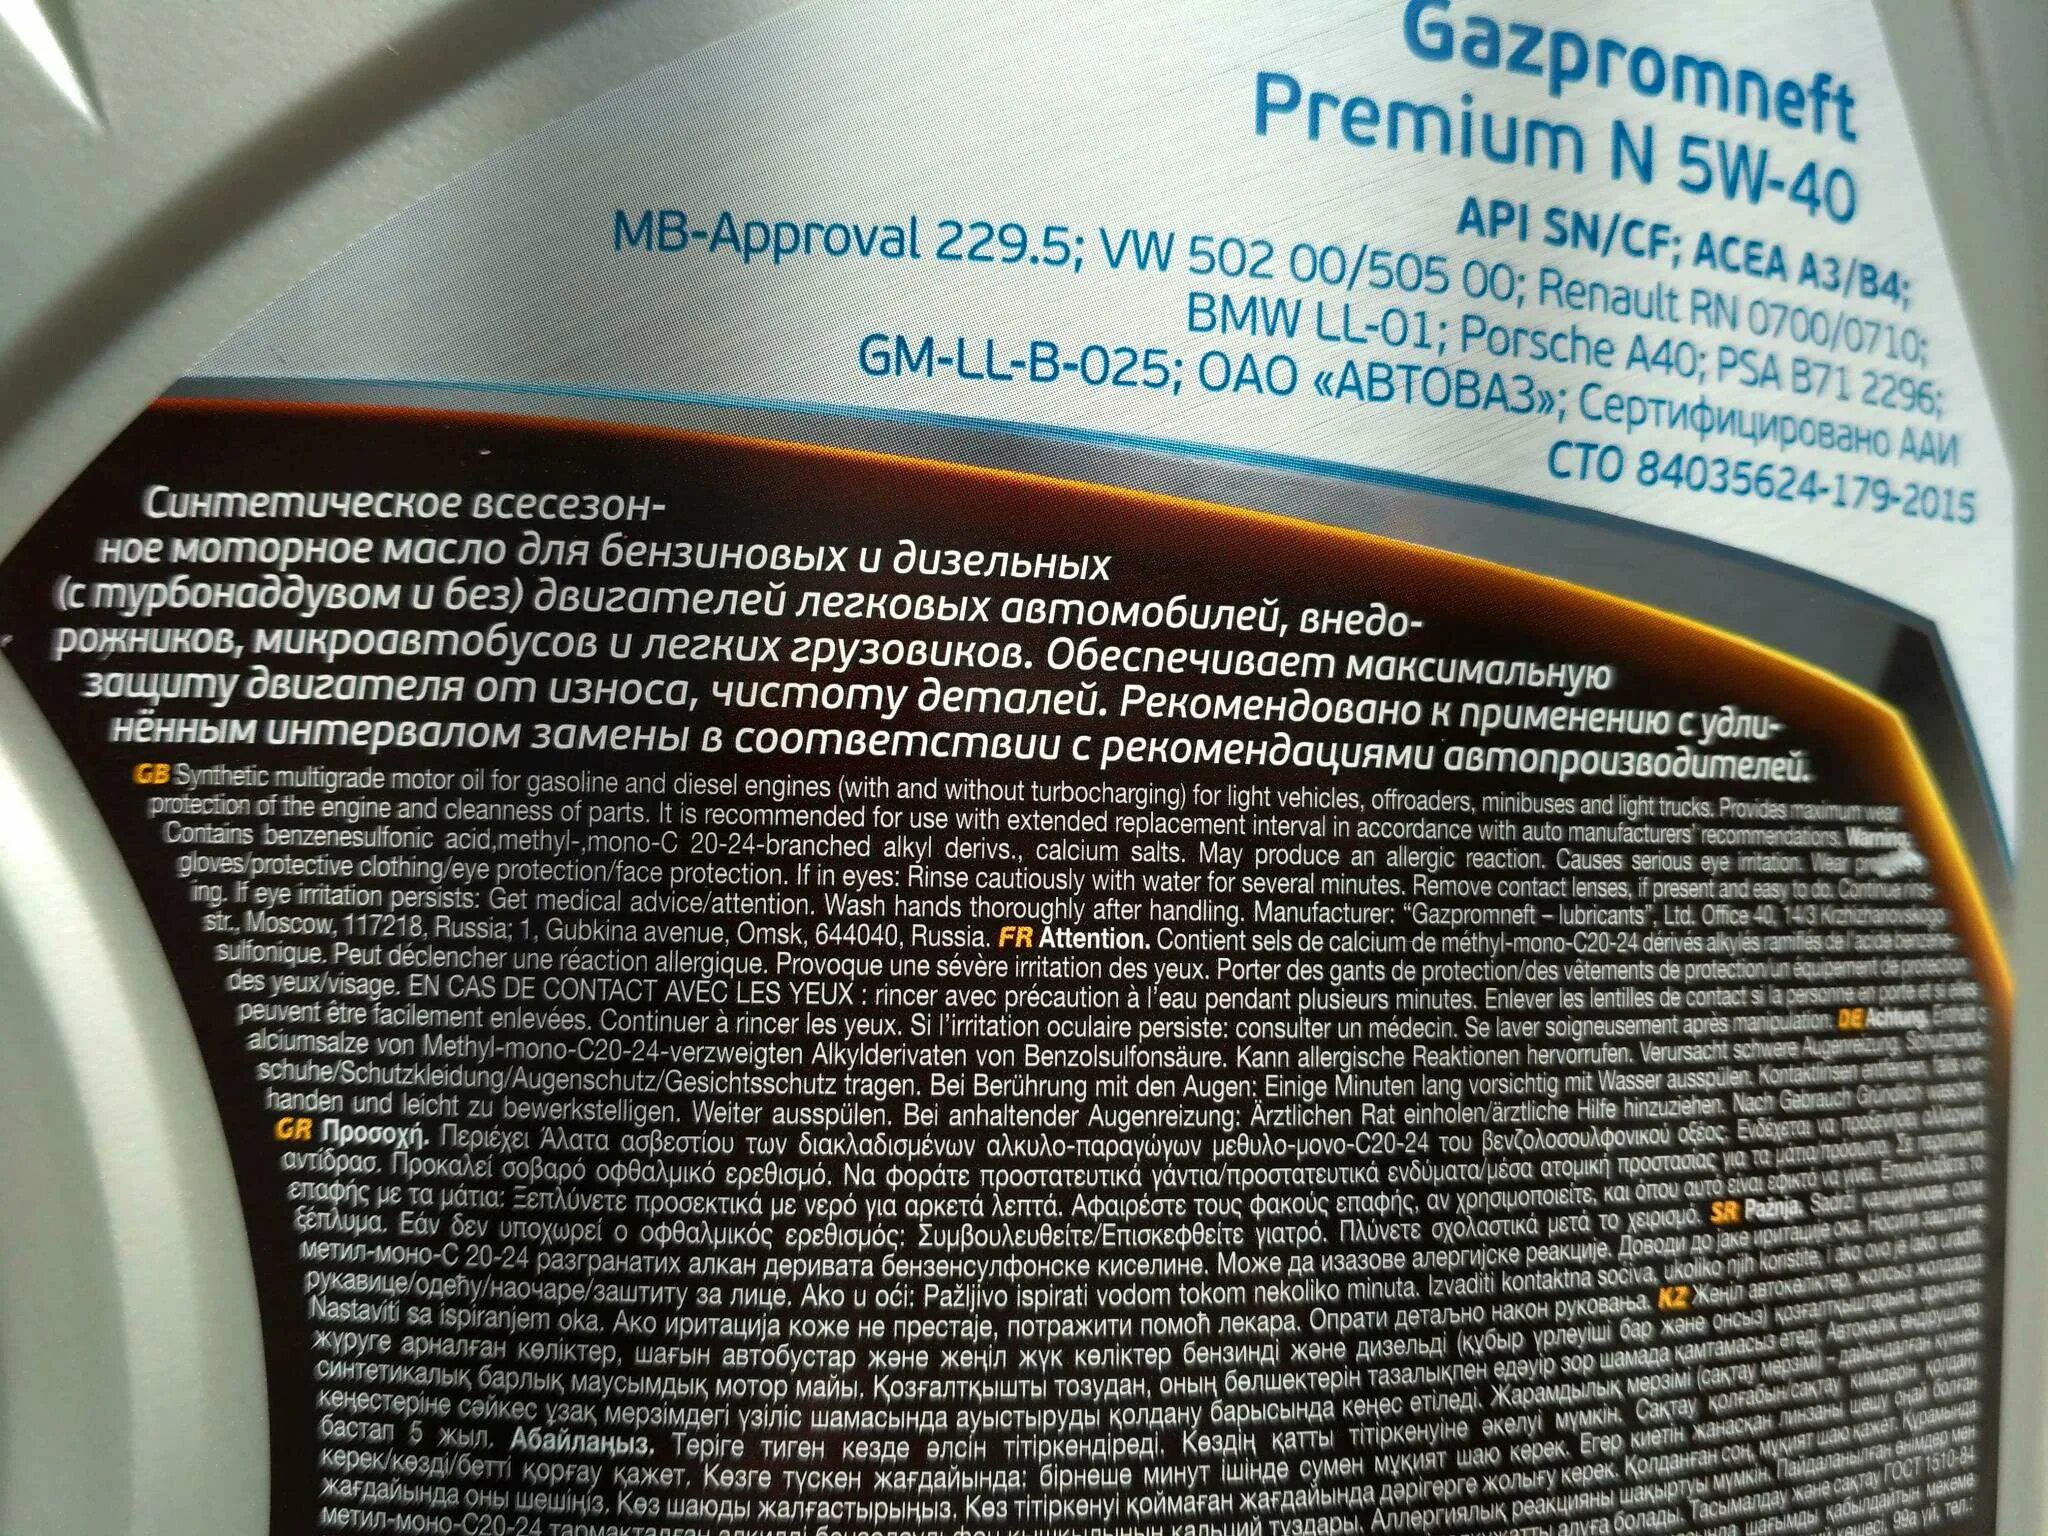 Масло газпромнефть отзывы владельцев. Масло моторное Gazpromneft Premium n 5w40 синтетика. Масло Газпромнефть 5w40 Premium n. Моторное масло Gazpromneft Premium n 5w-40 синтетическое 4 л. Газпромнефть 5w40 синтетика Premium n 5л.